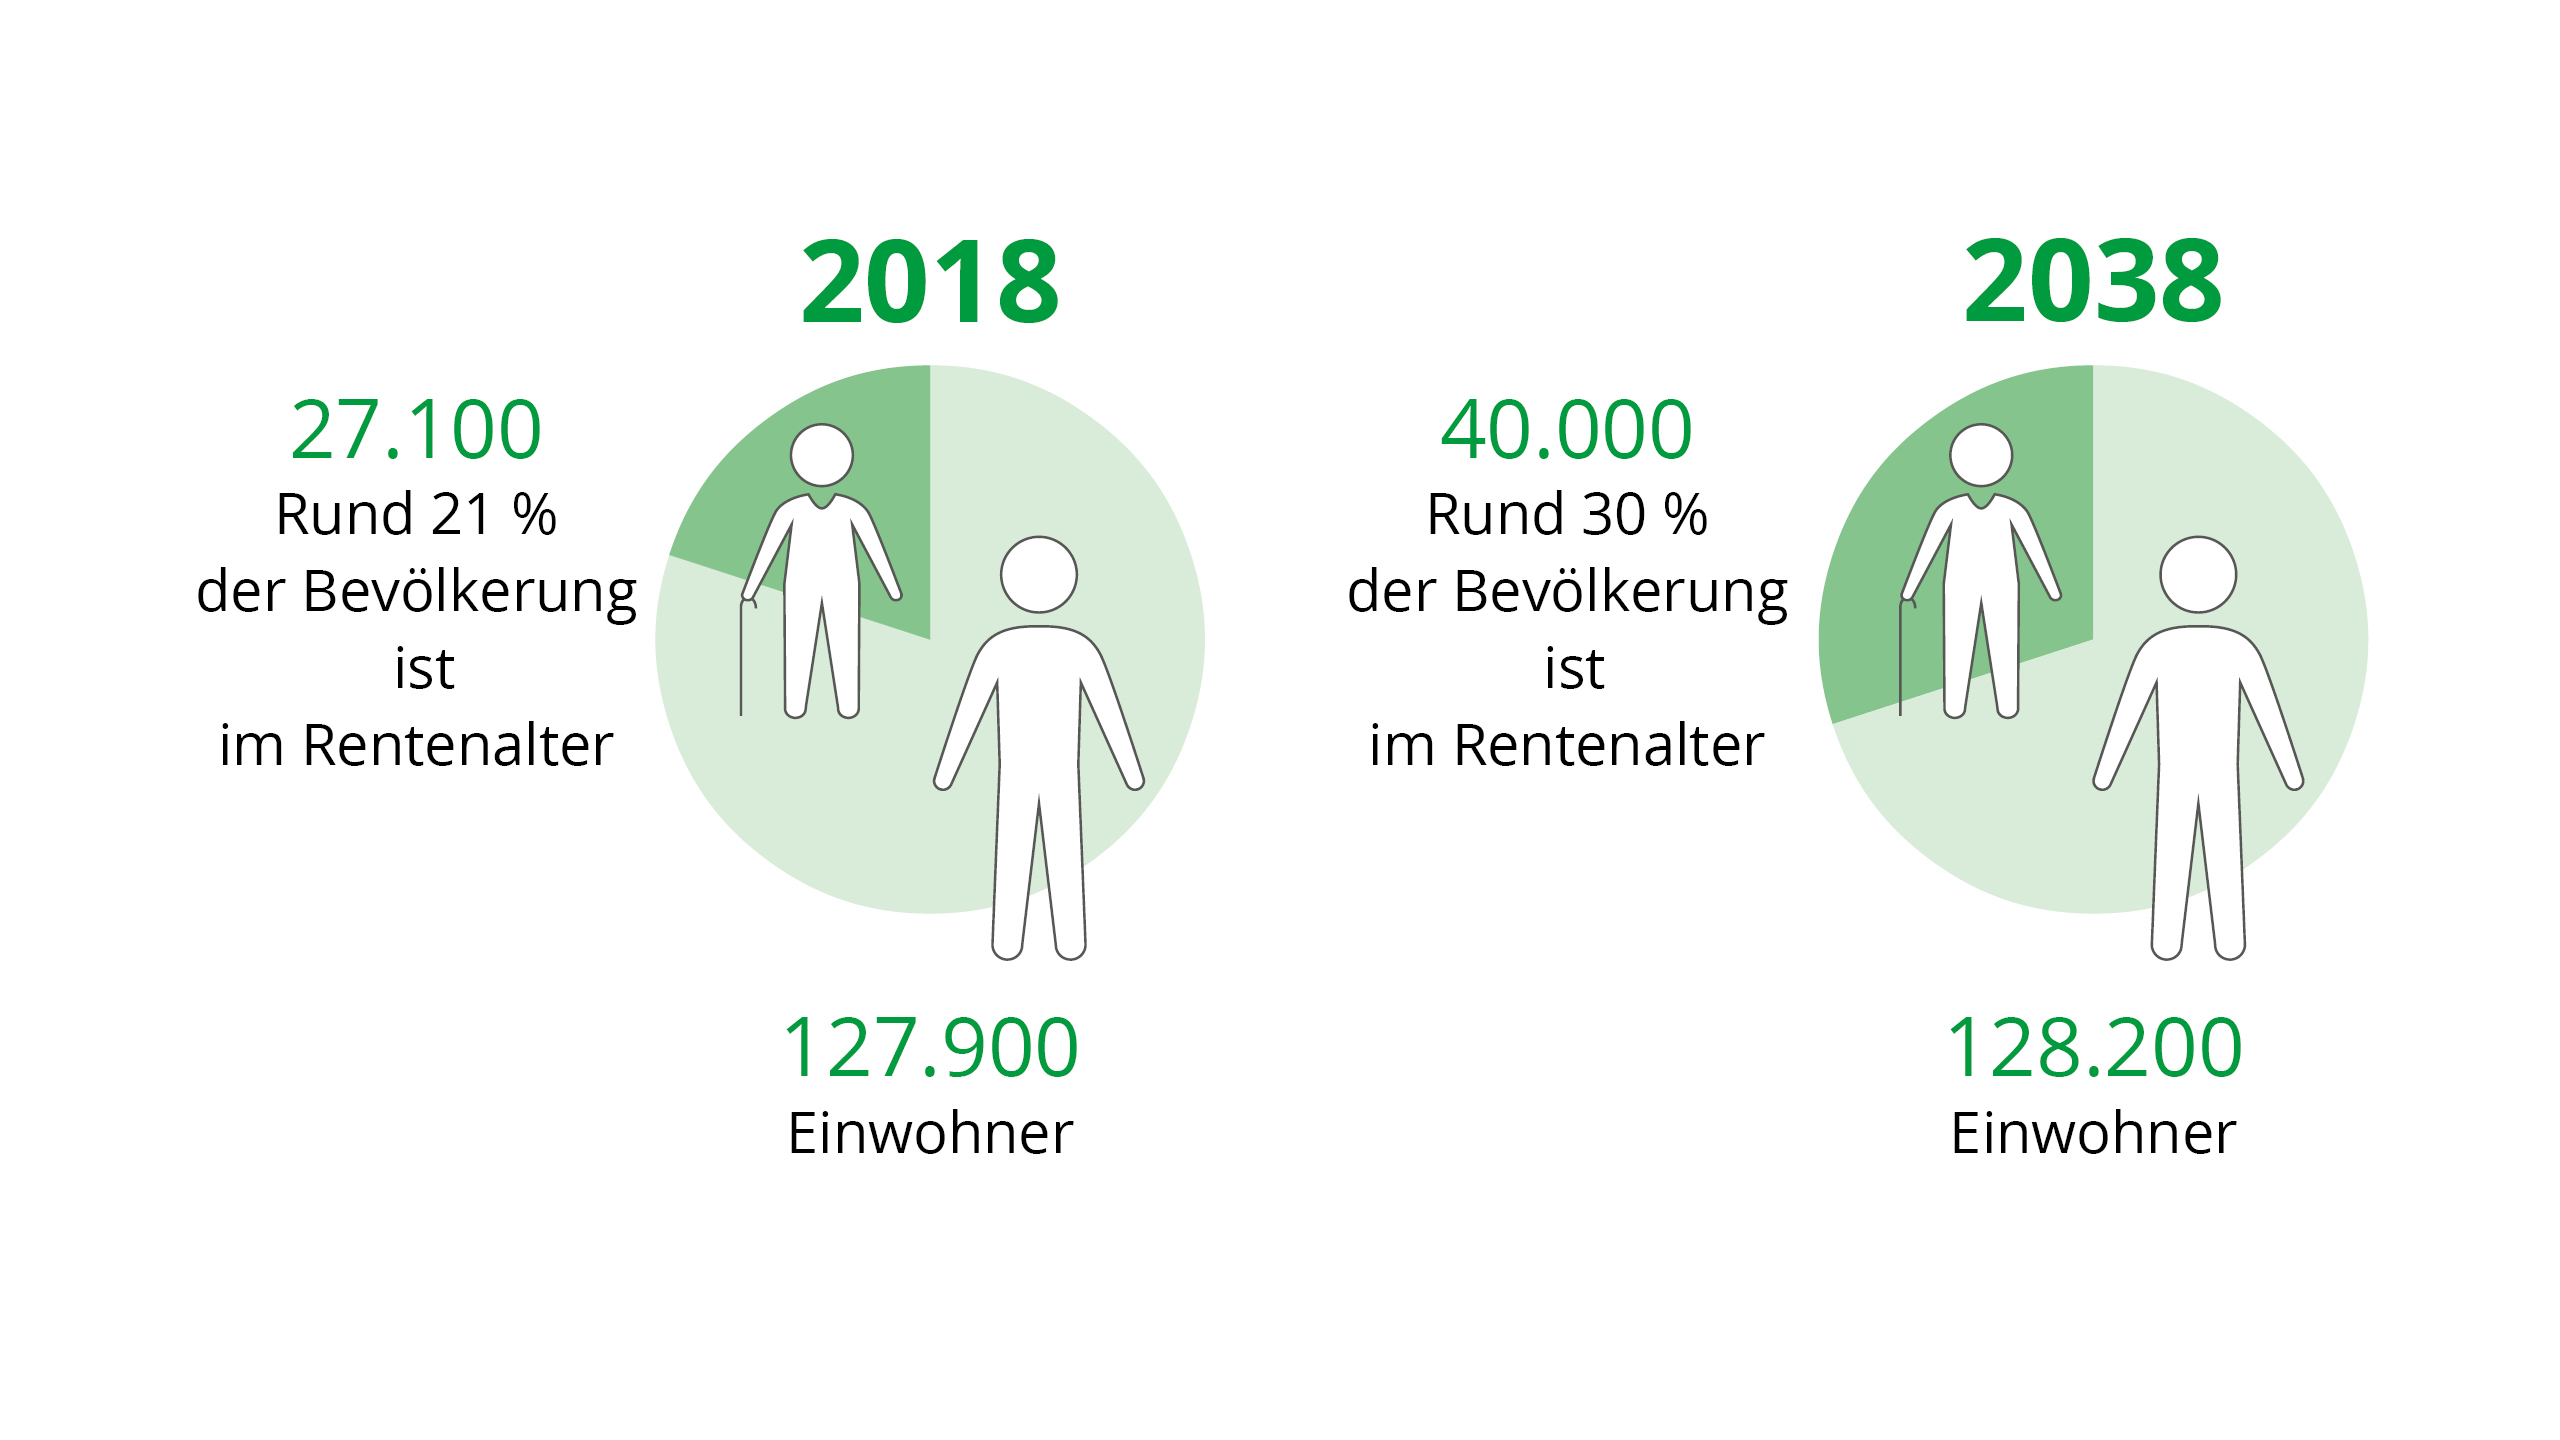 Demoskopie Anteil der Rentner im Vergleich 2018 und 2038